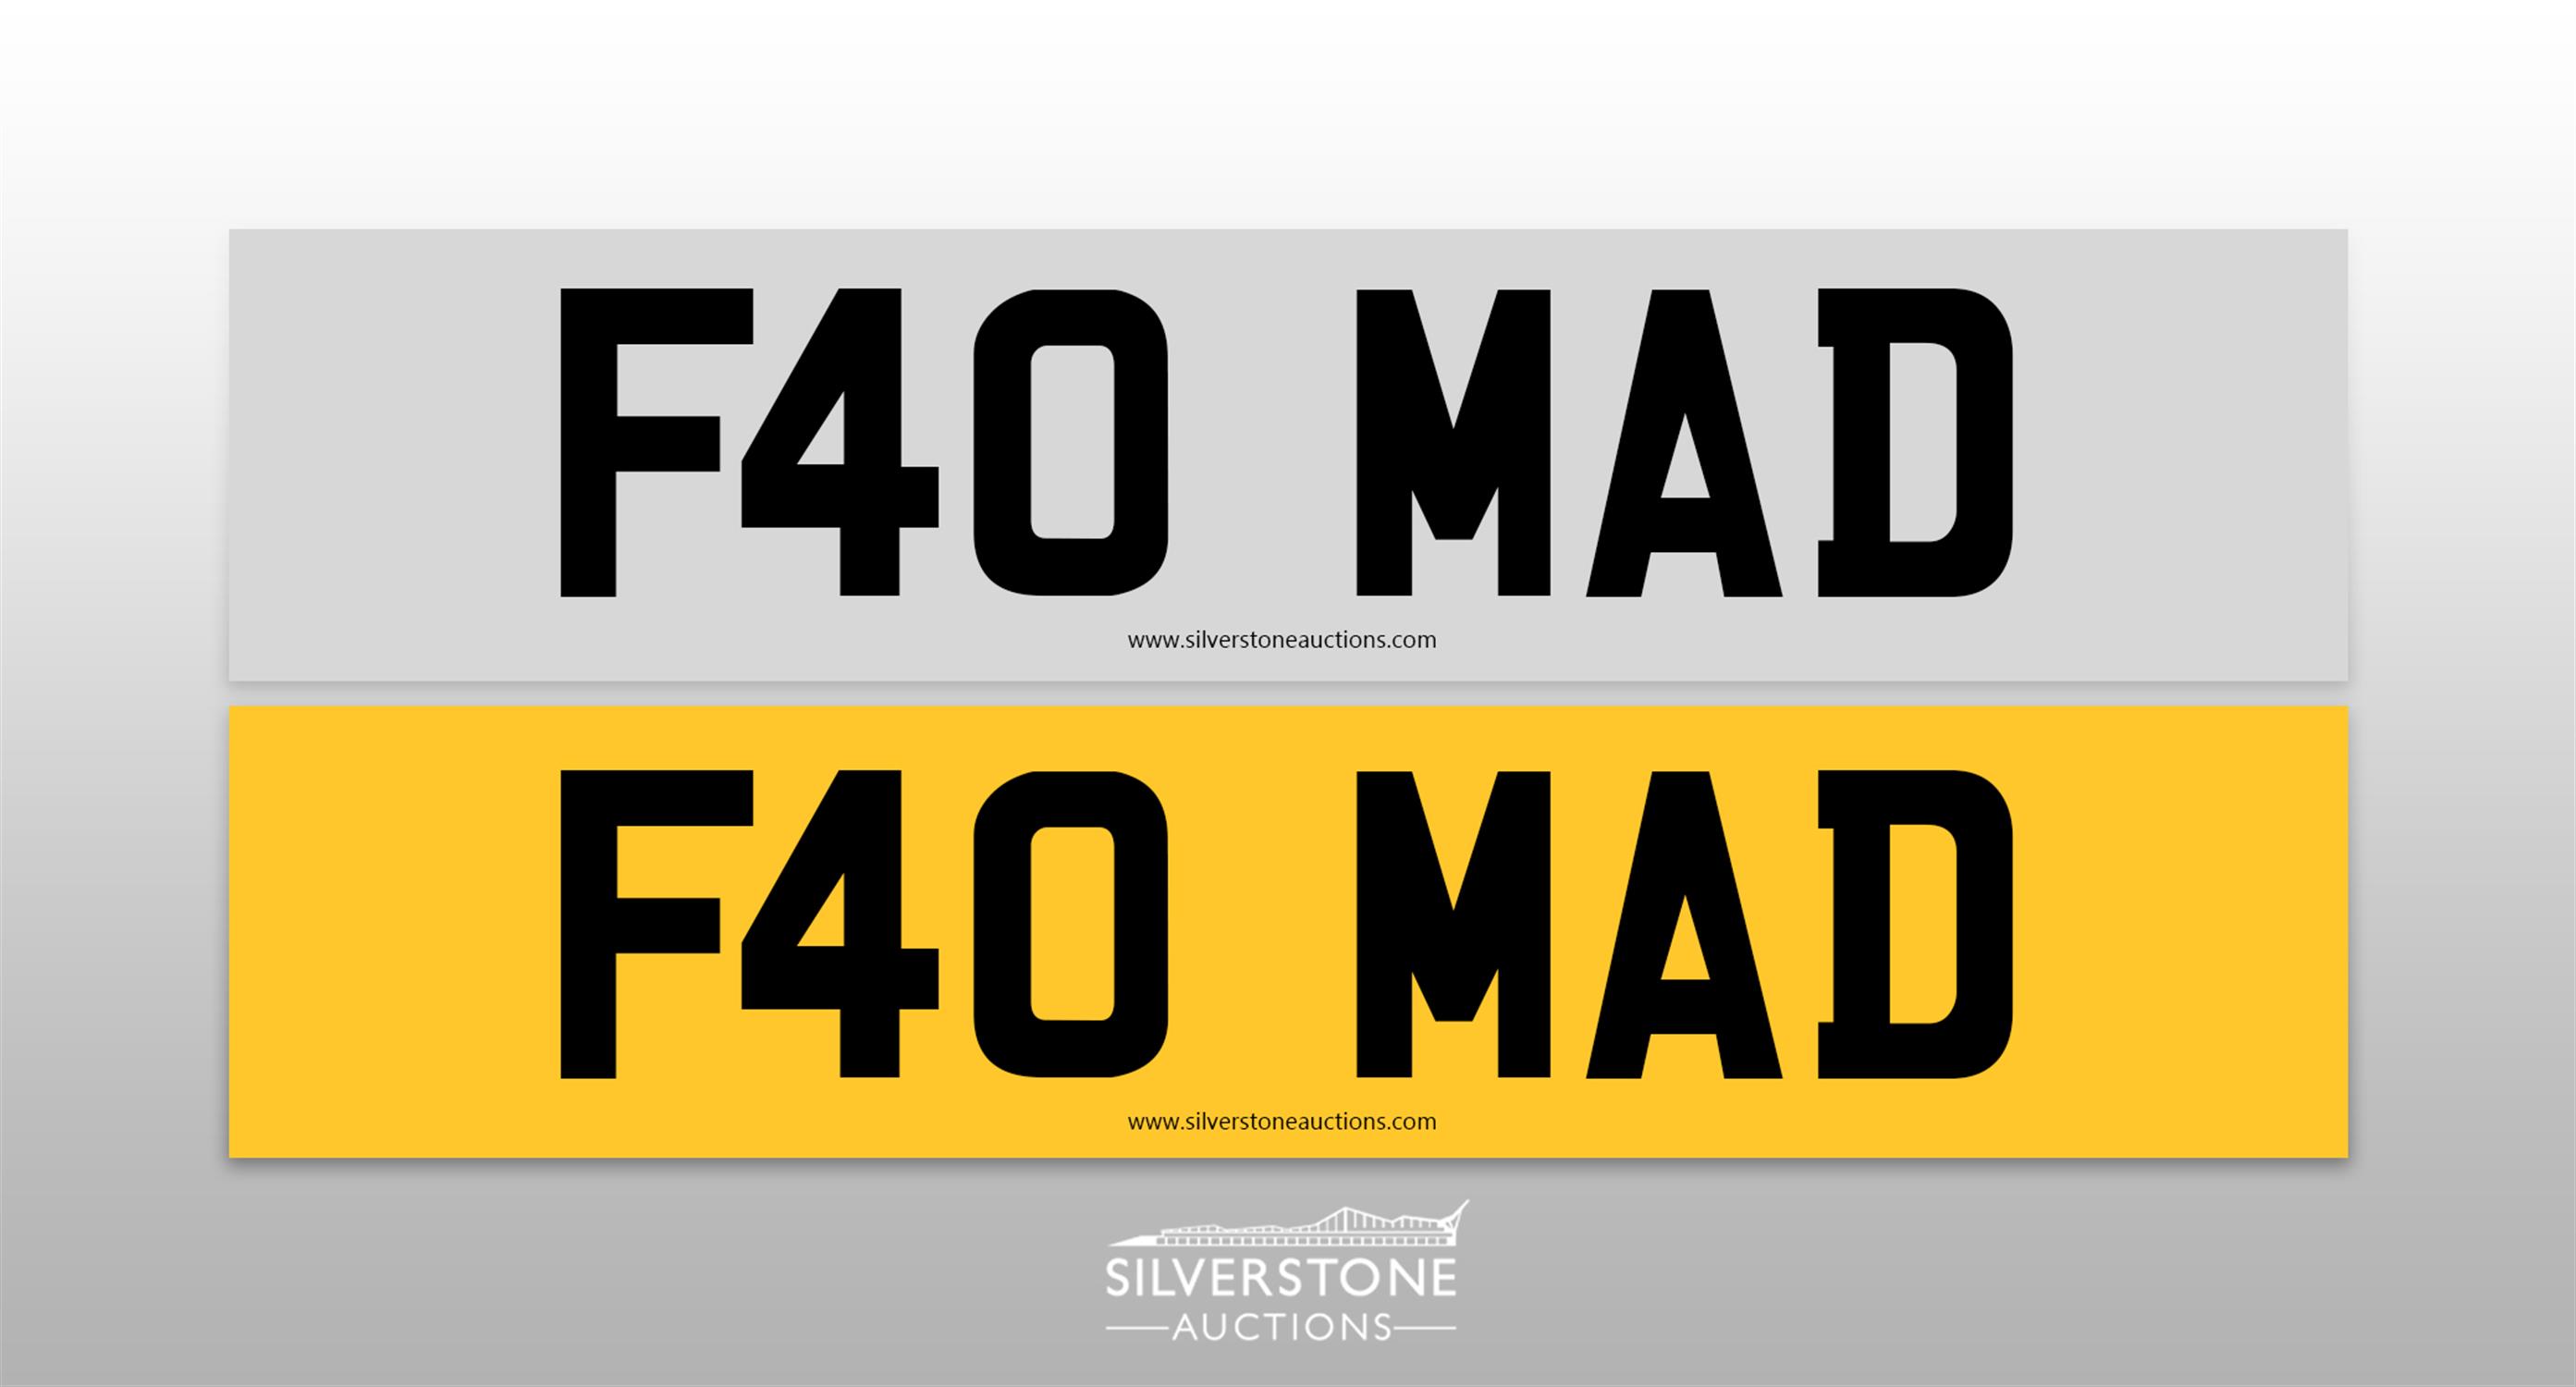 Registration Number F40 MAD